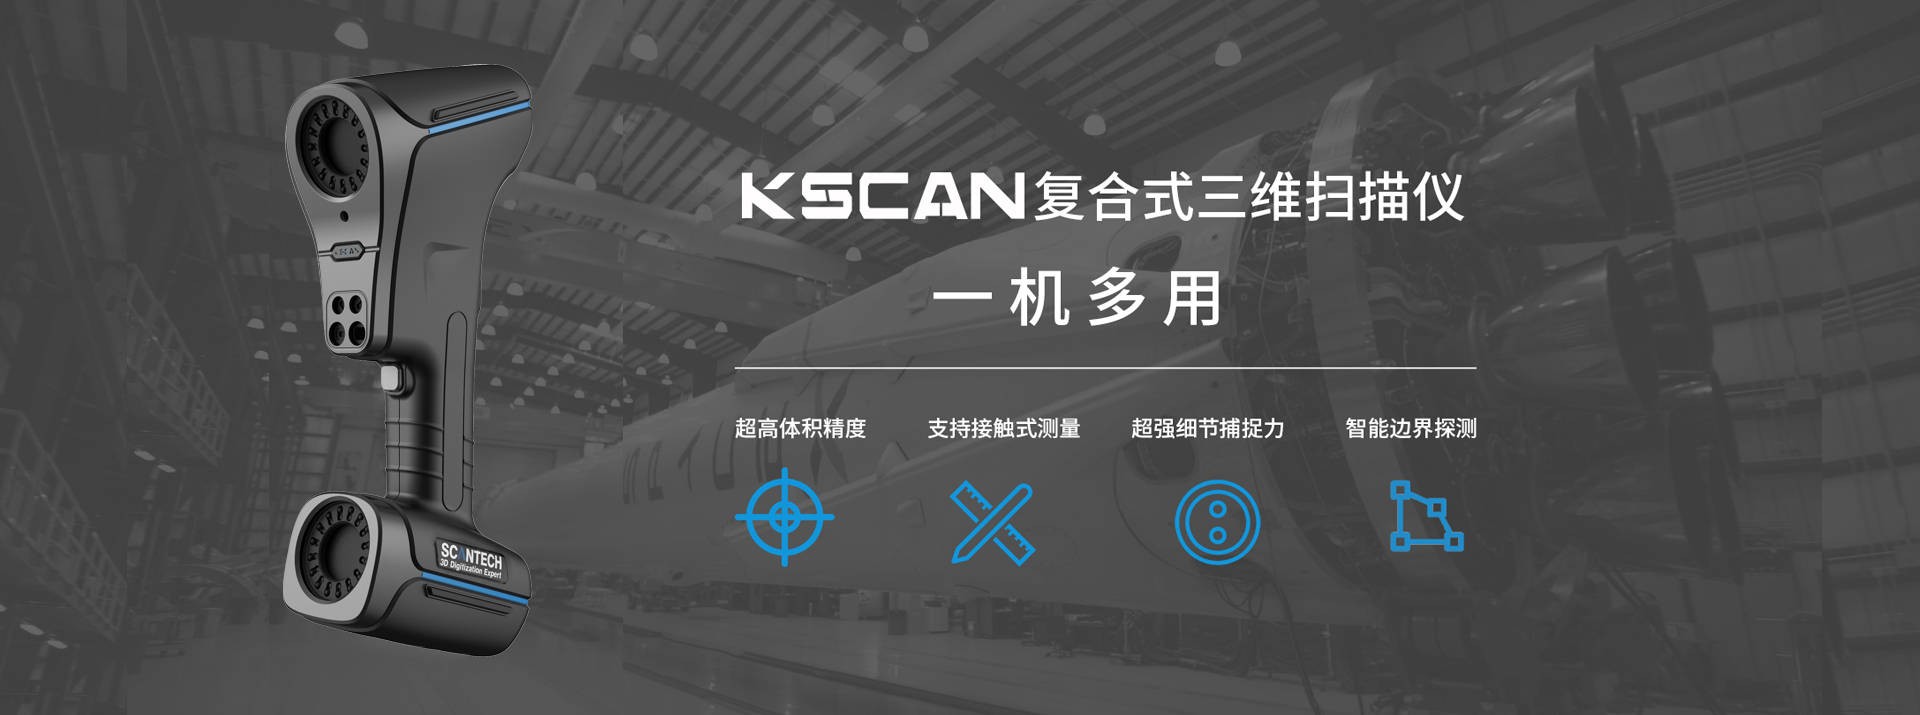 KSCAN-MAGIC復合式3D掃描儀